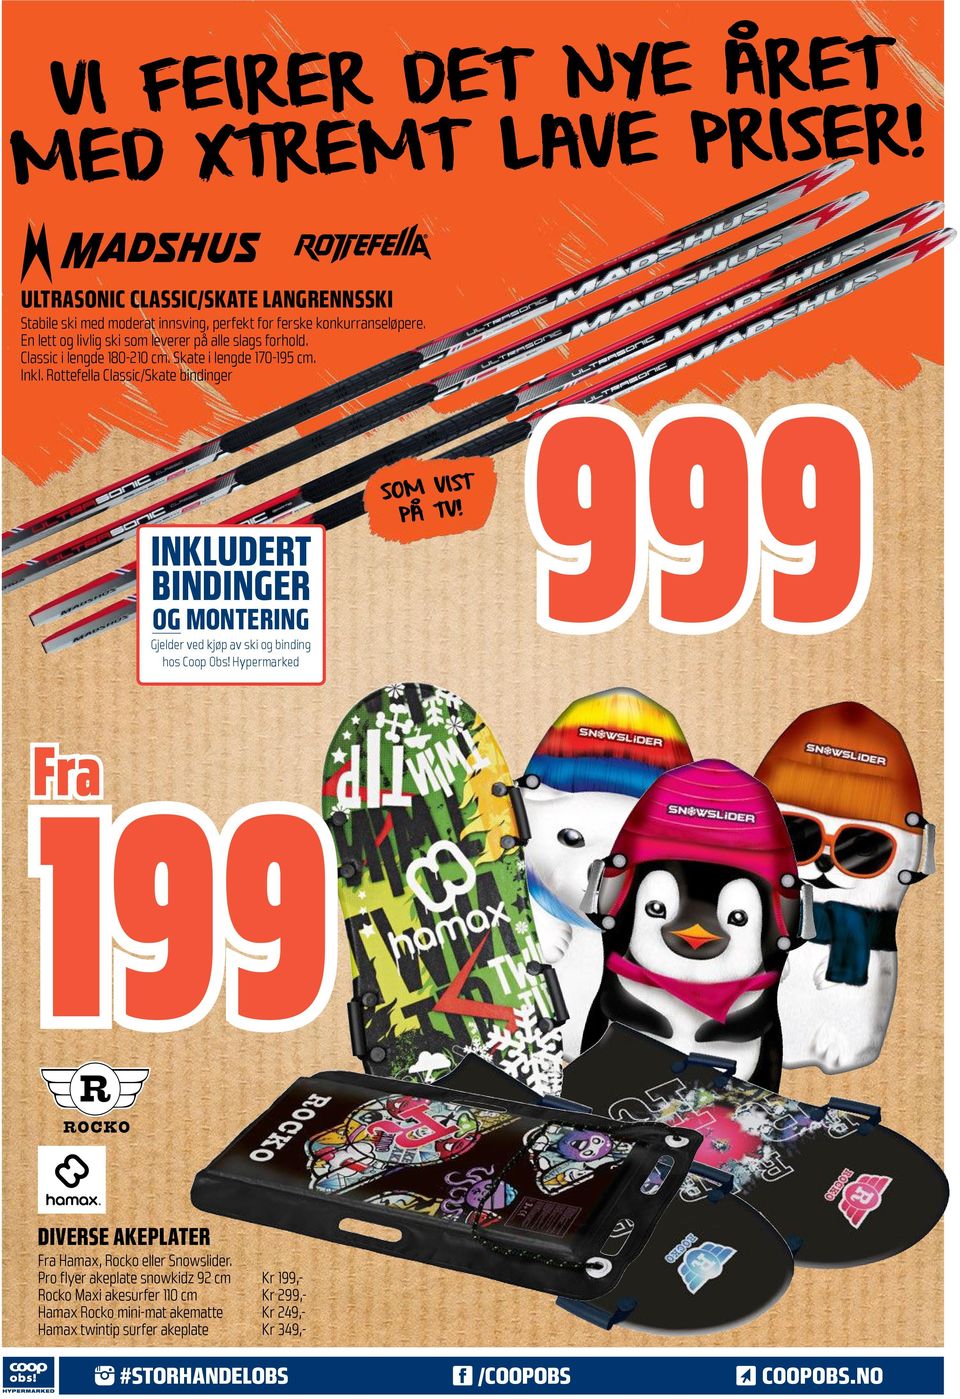 Rottefella Classic/Skate bindinger INKLUDRT BINDINGR OG MONTRING Gjelder ved kjøp av ski og binding hos Coop Obs! Hypermarked T SOM VIS PÅ TV!